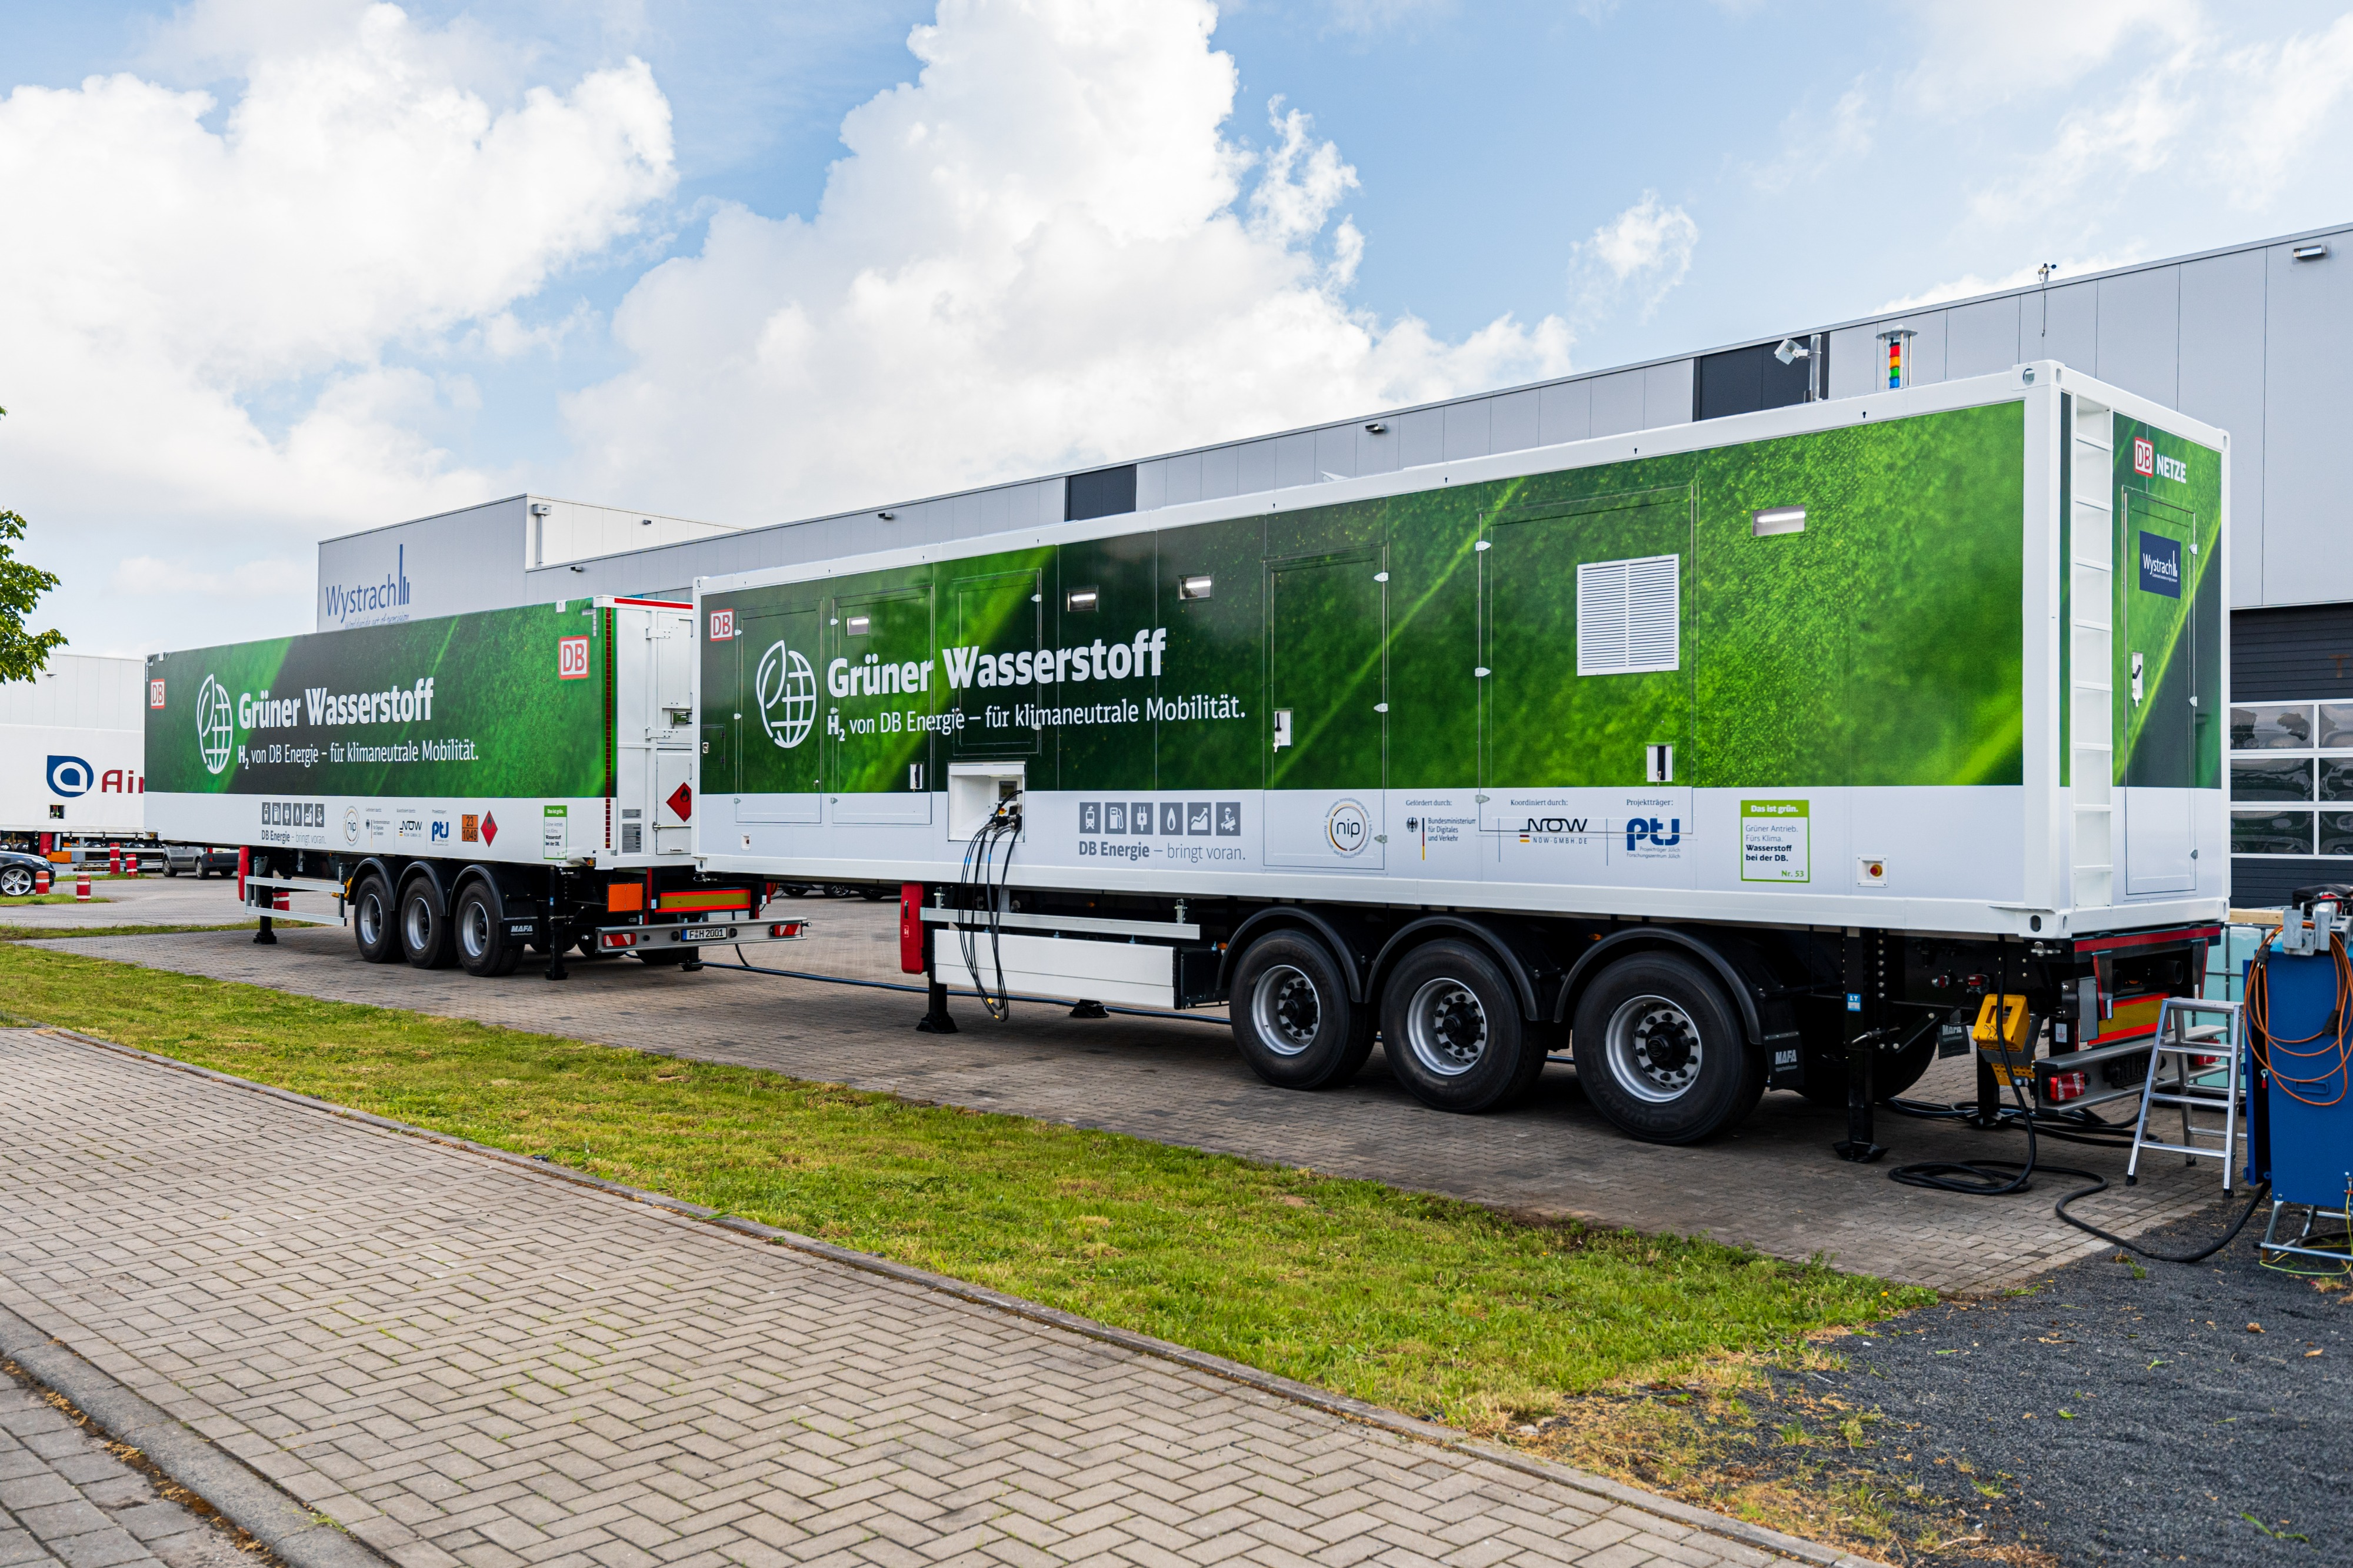 Deutsche Bahn chooses Wystrach for hydrogen refueling station